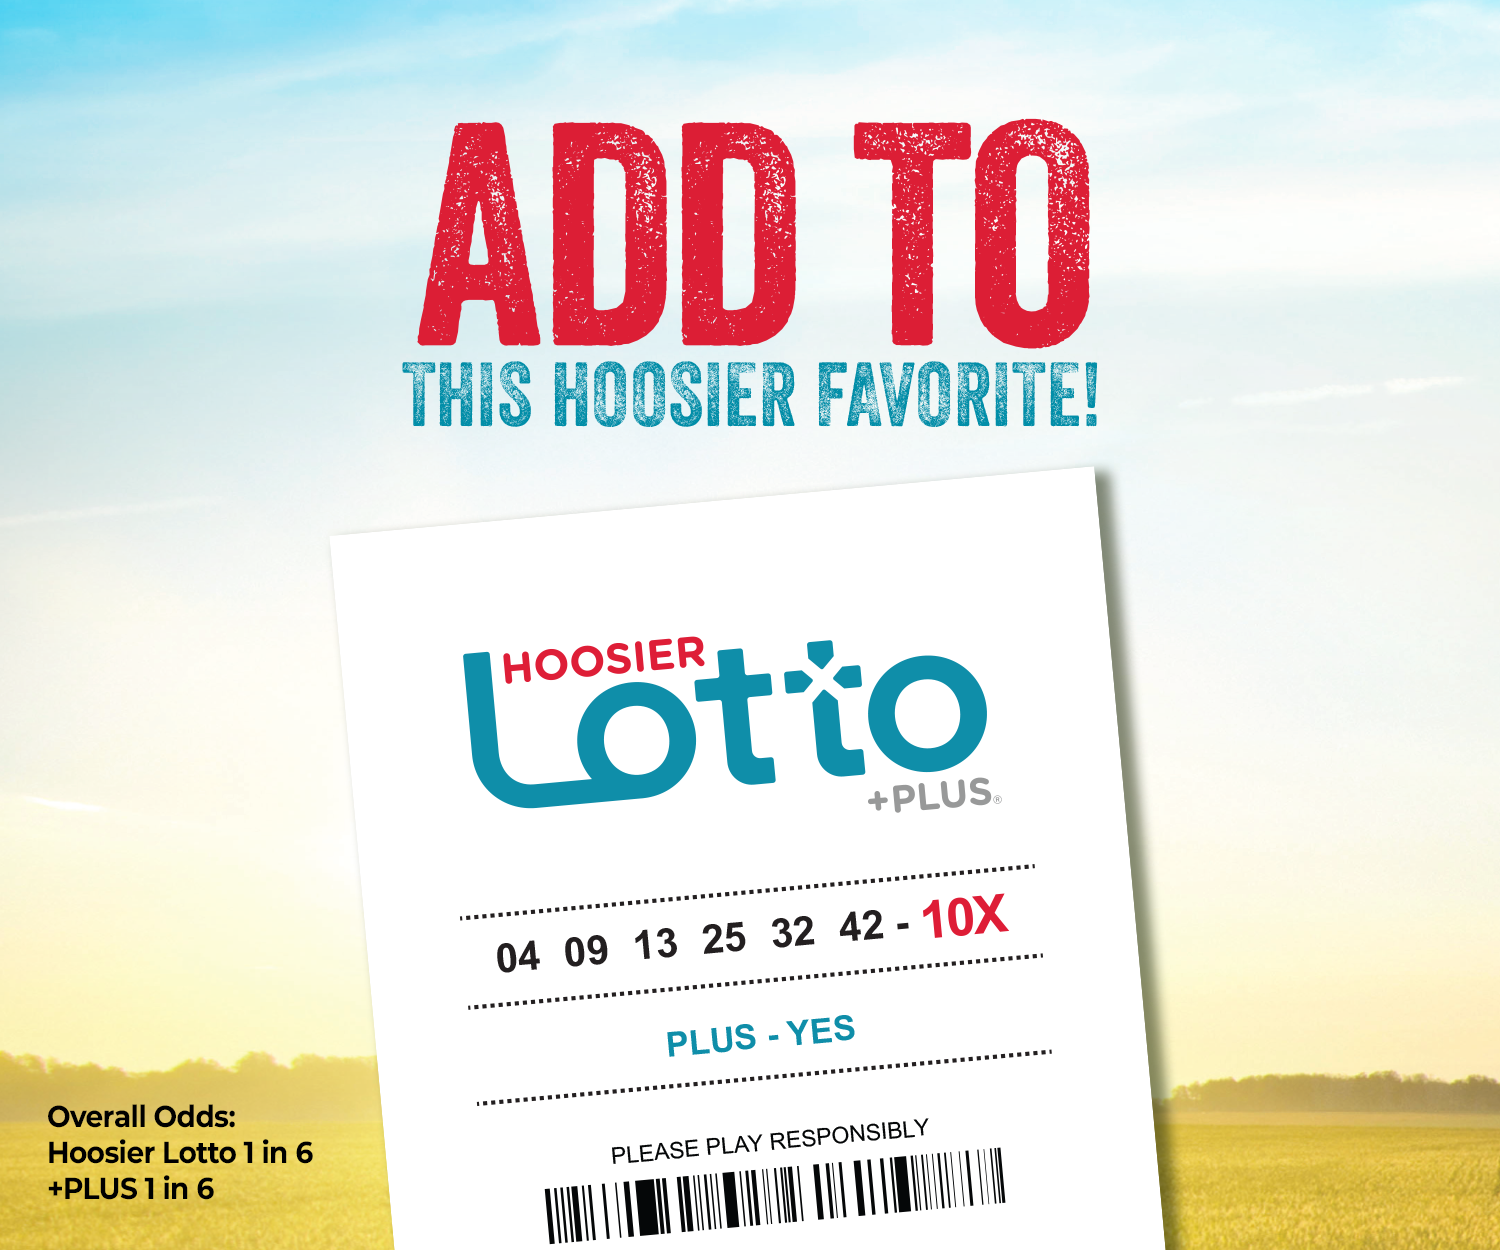 Hoosier Lotto